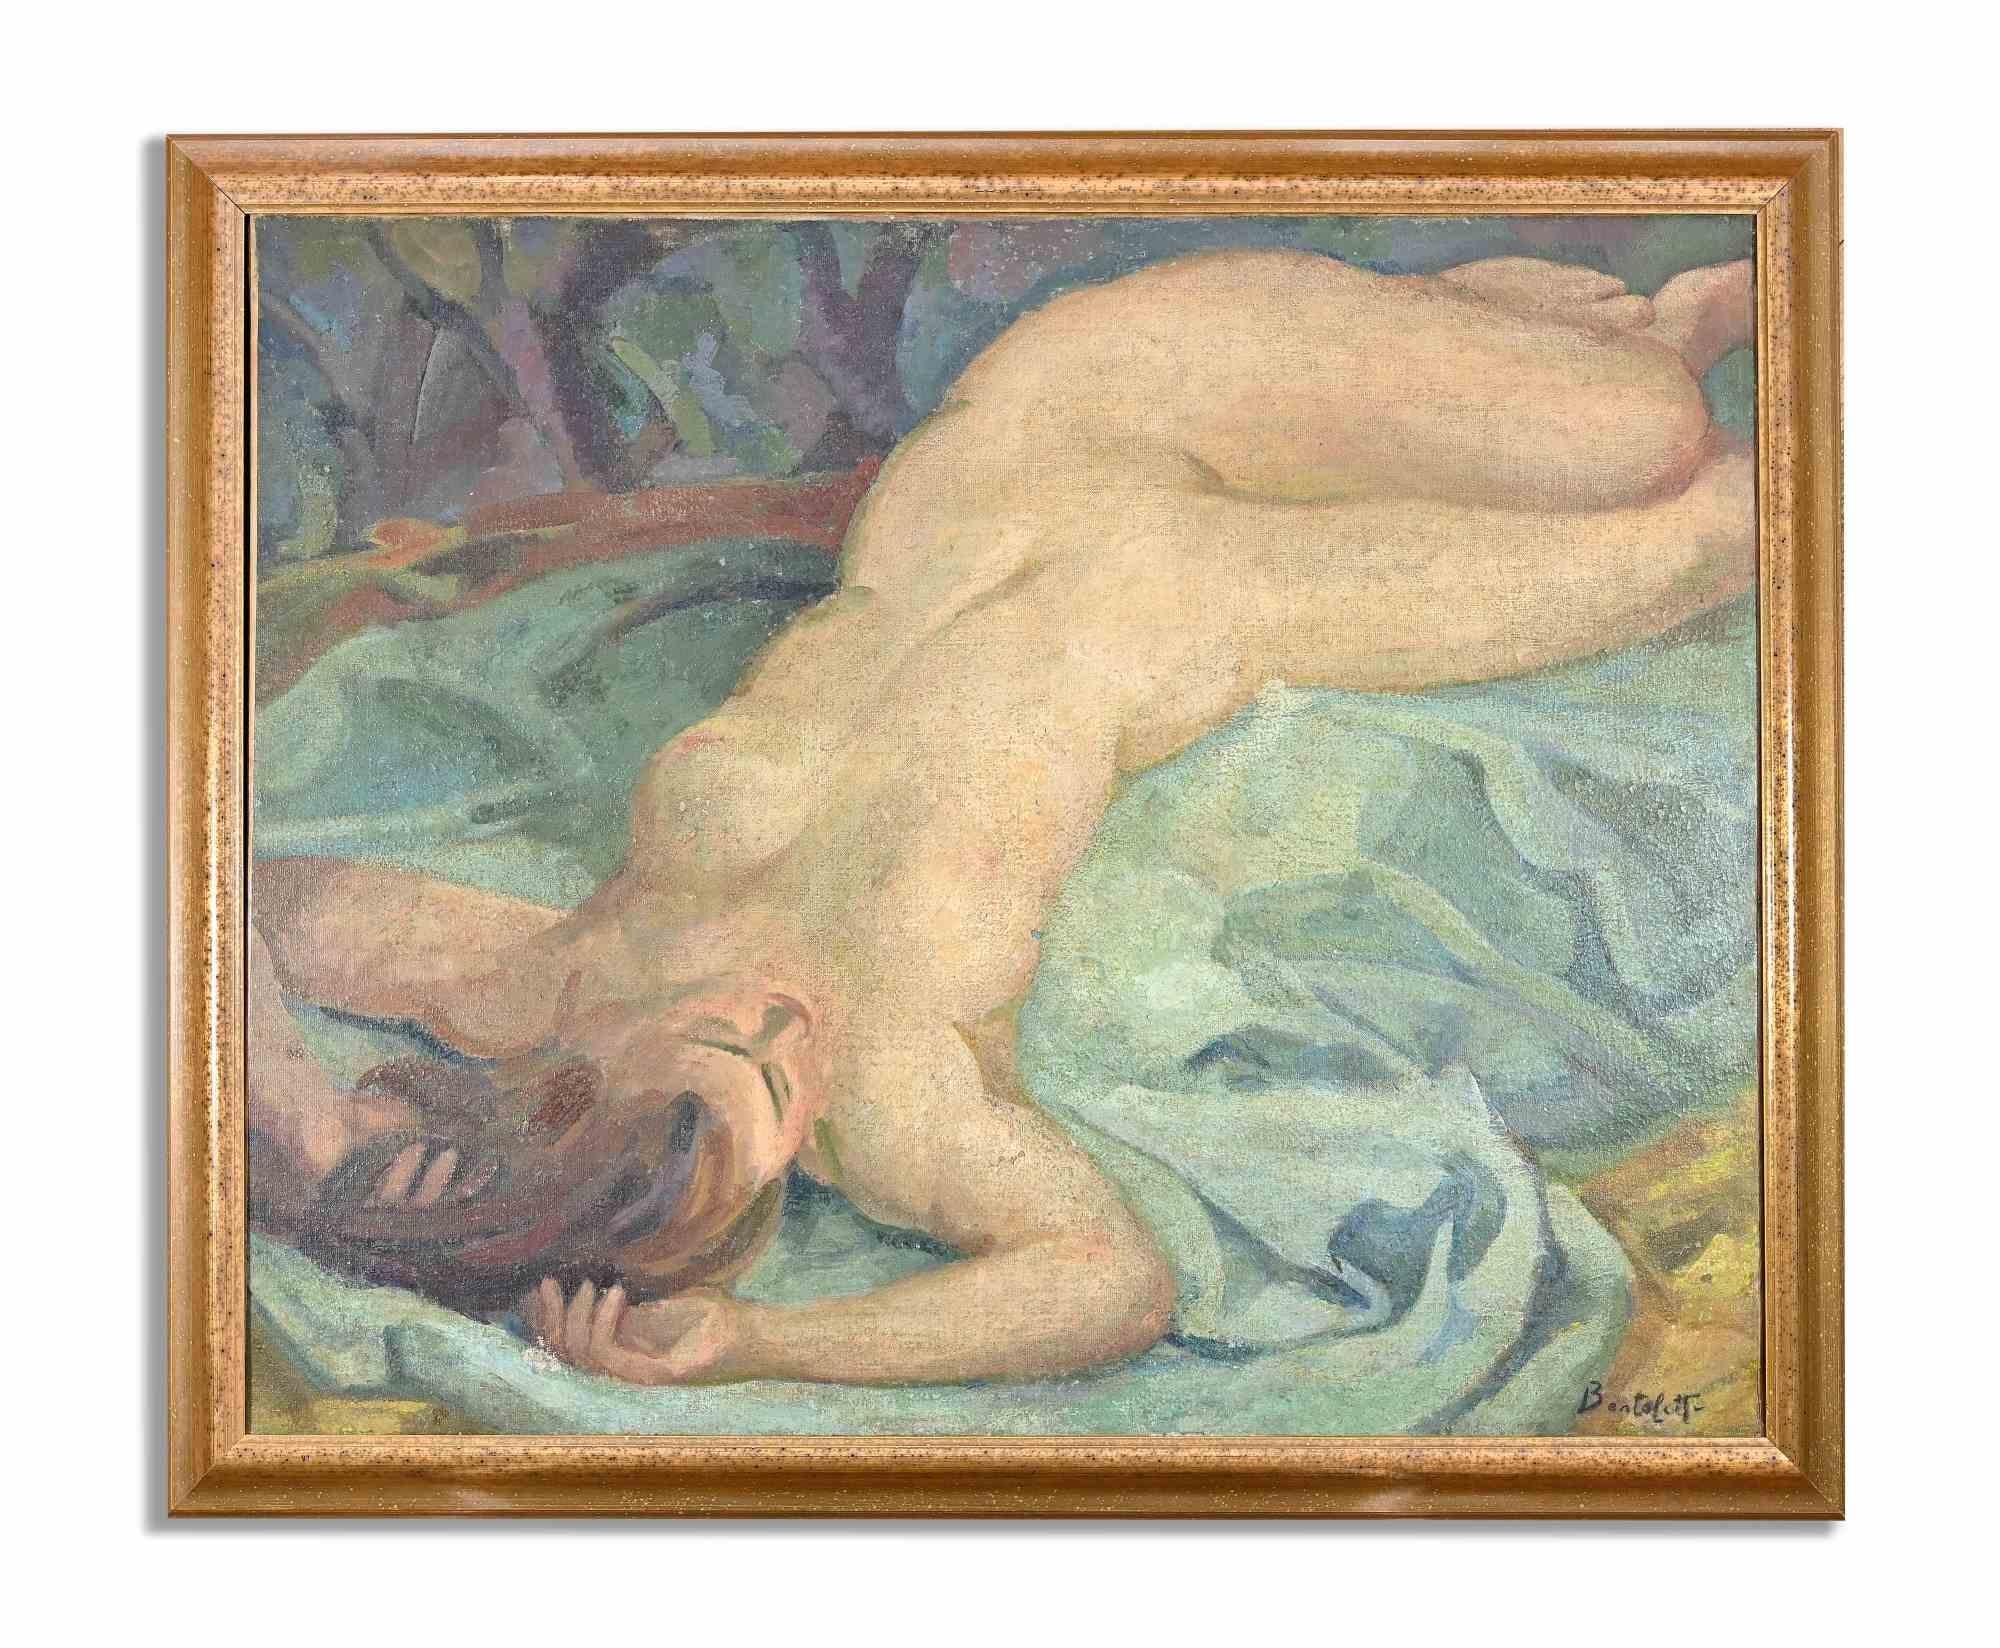 Lying Woman est une œuvre d'art moderne originale réalisée par l'artiste Nino Bertoletti entre 1930 et 1940.

Huile de couleur mélangée sur toile.

Signé par l'artiste dans la marge inférieure.

Nino Bertoletti (Rome, 26 octobre 1889 - Rome, 24